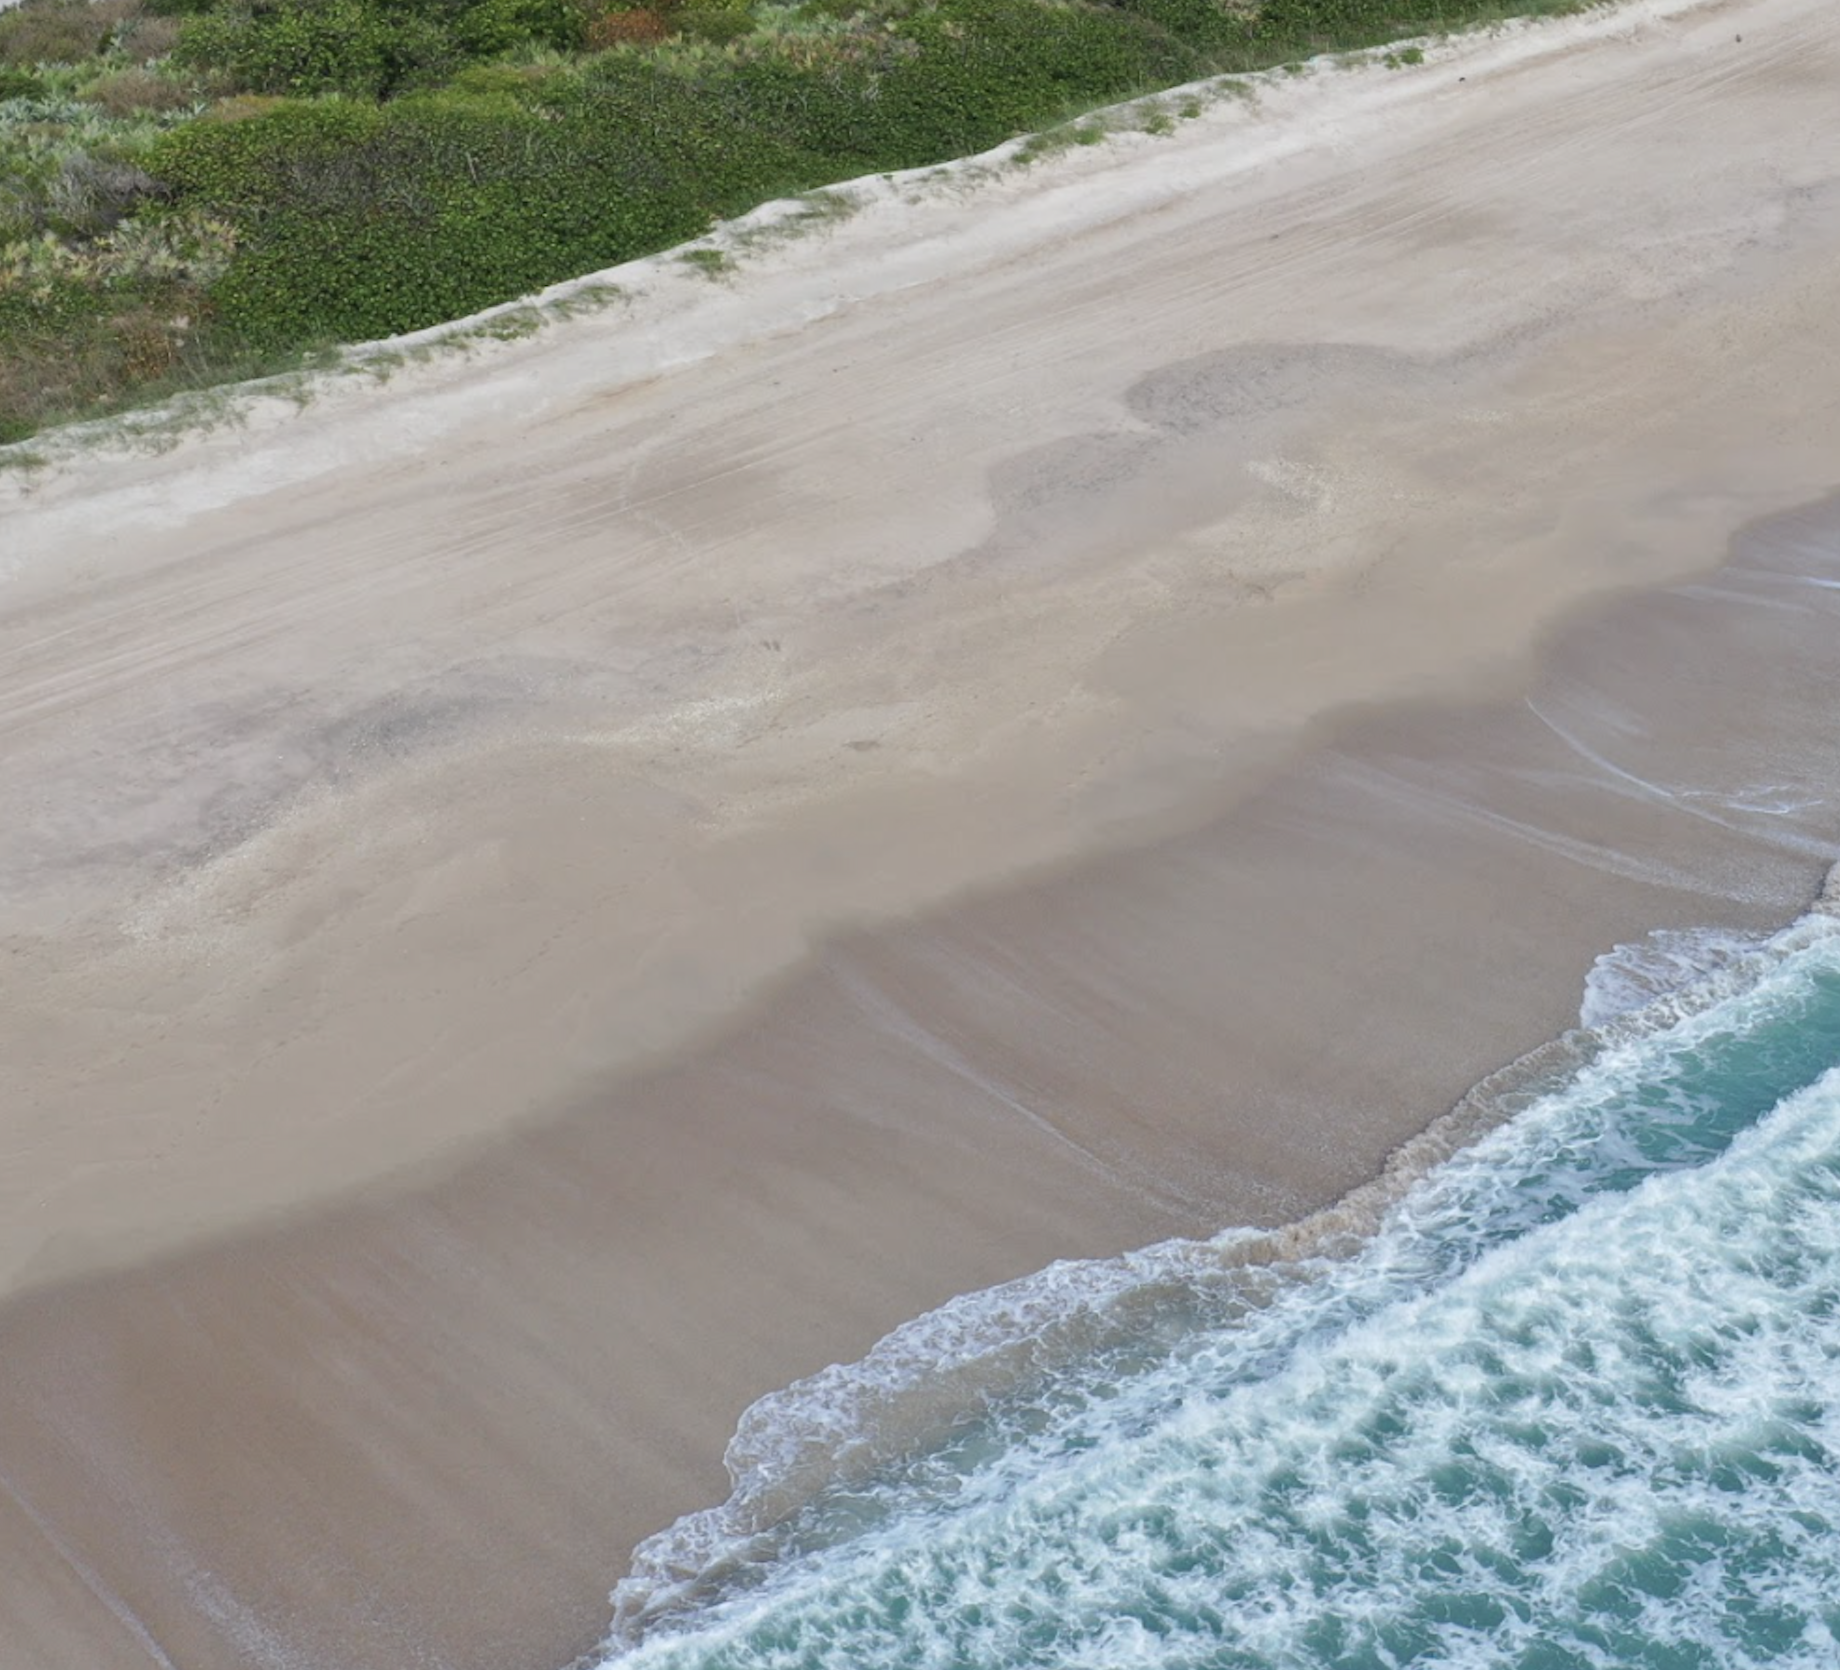 melbourne beach drone image square